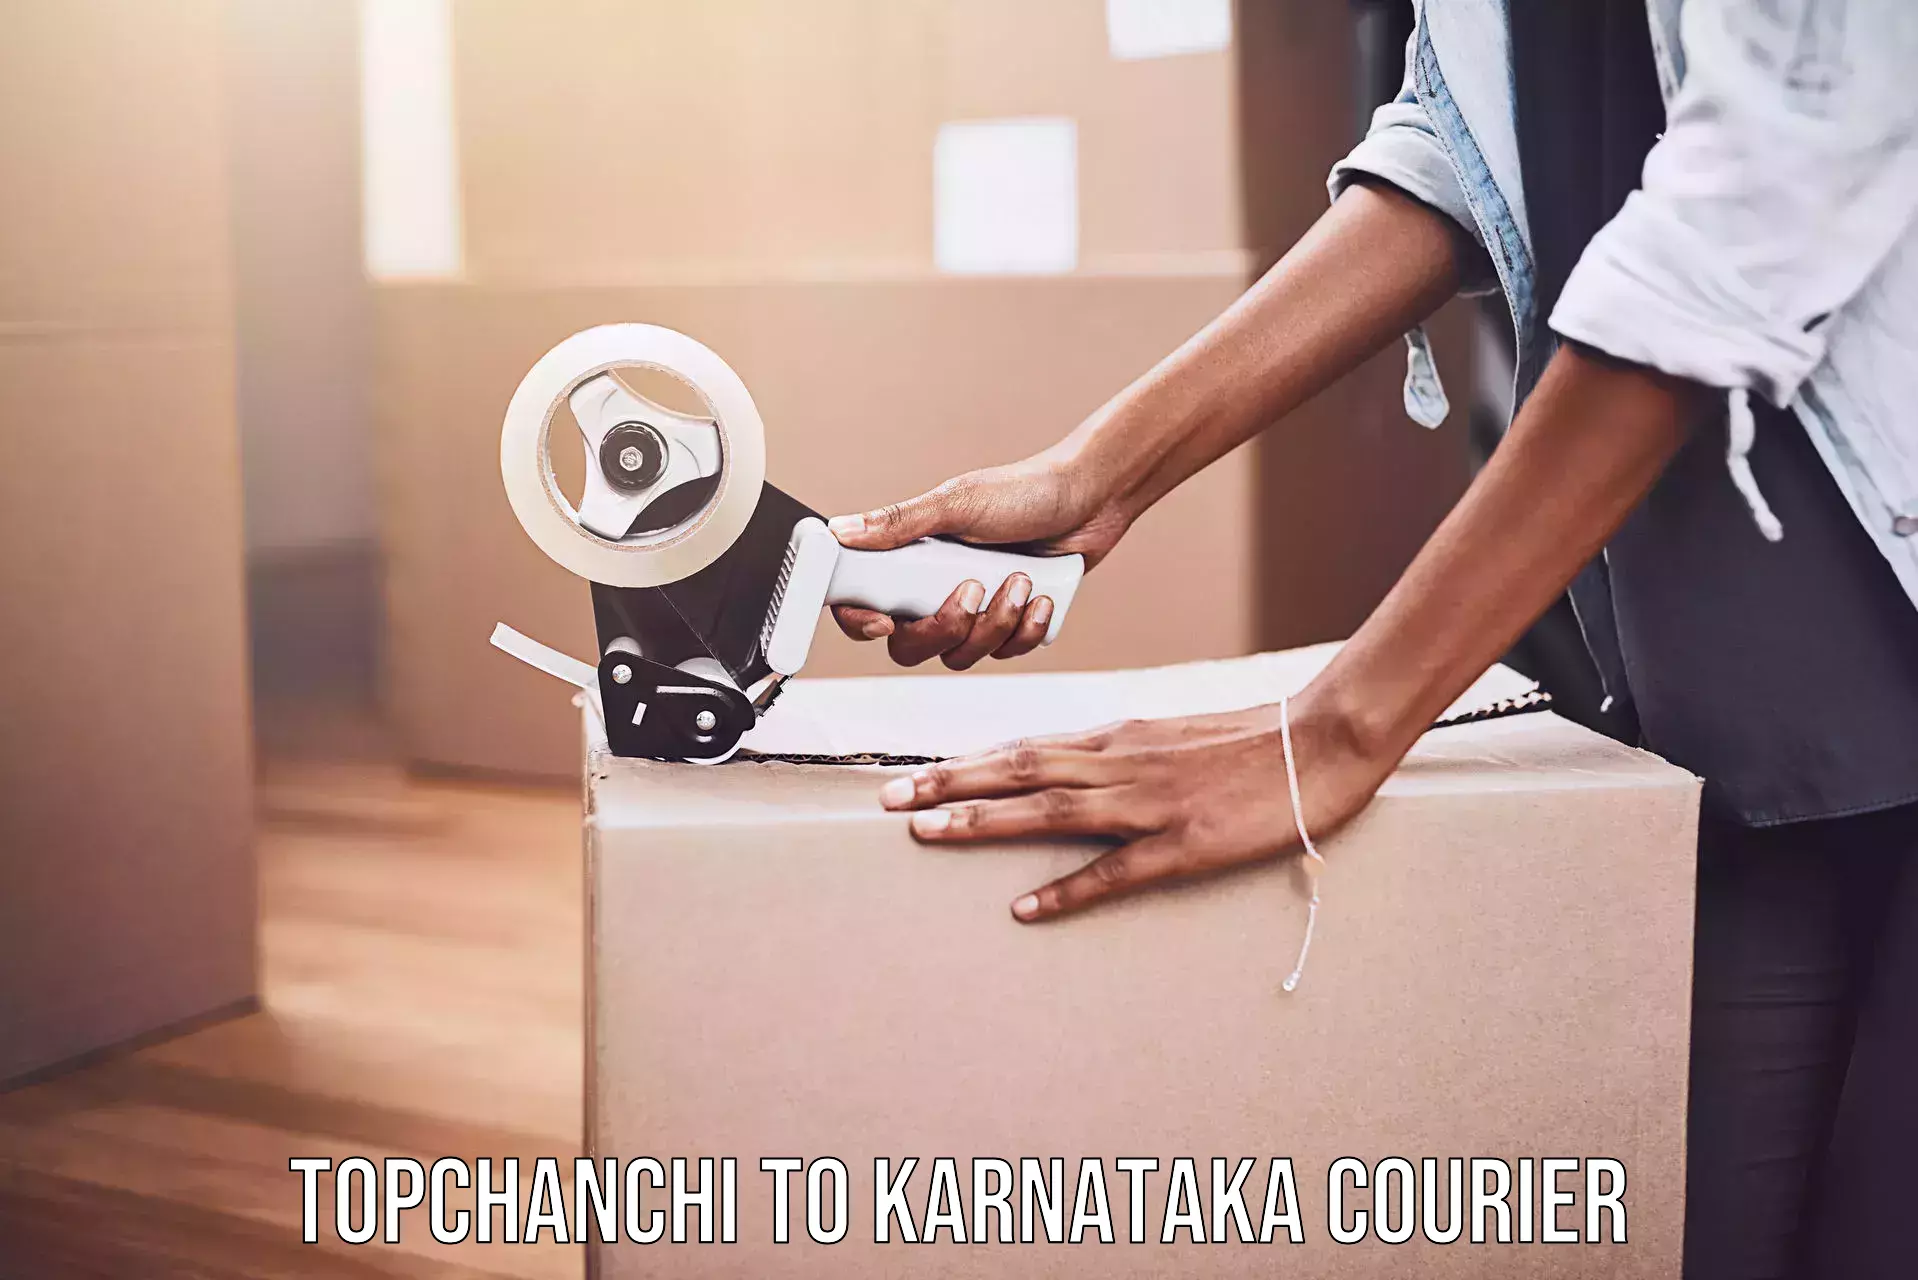 On-call courier service Topchanchi to Kanakapura